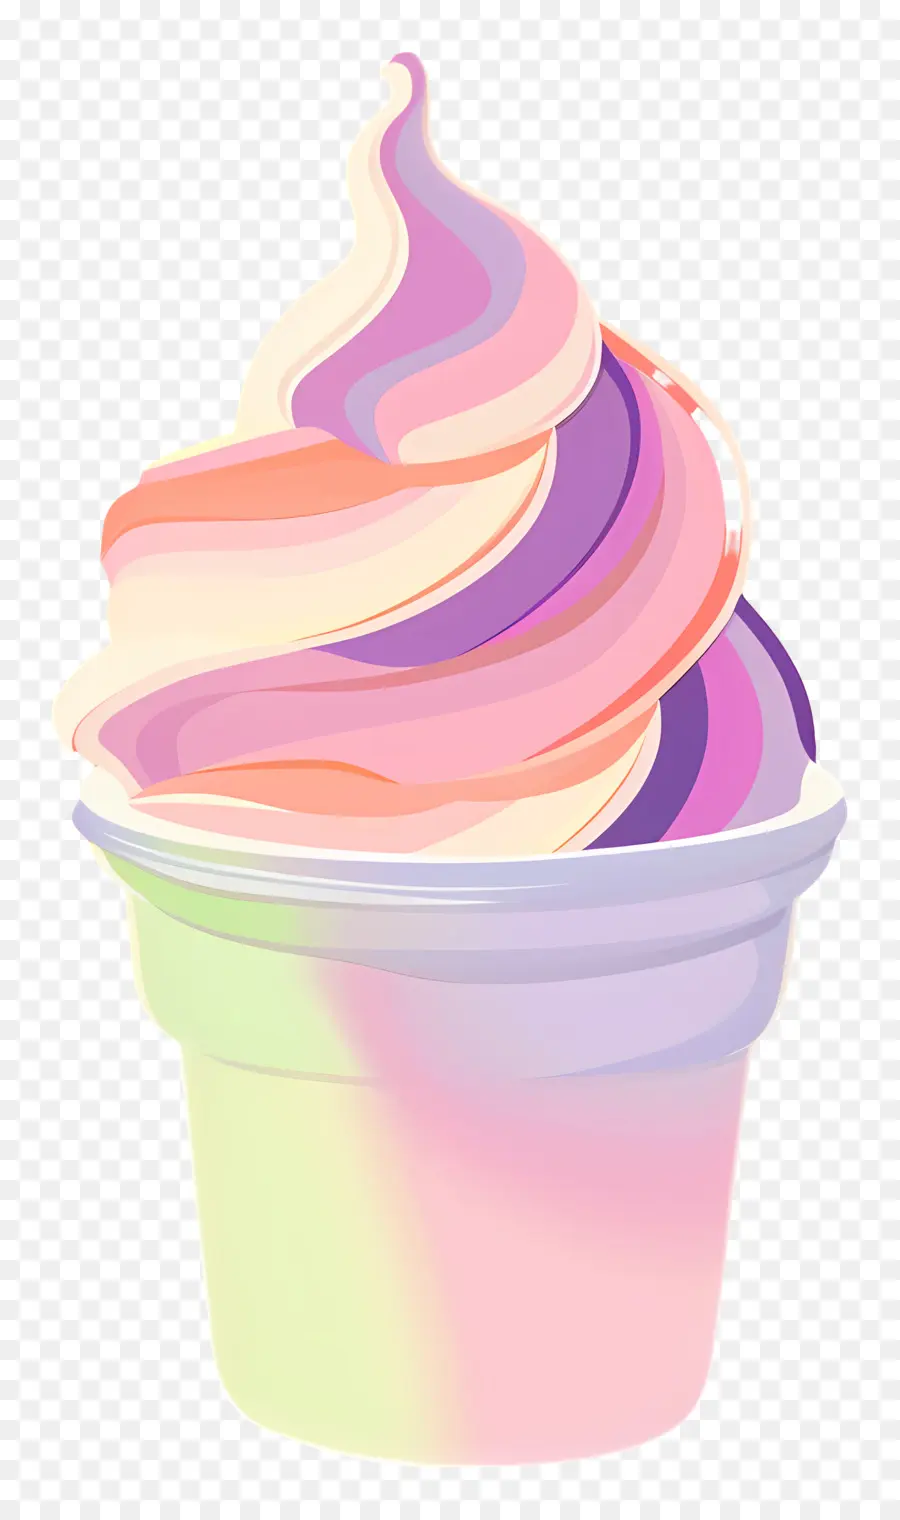 Dondurulmuş Yoğurt，Dondurma PNG